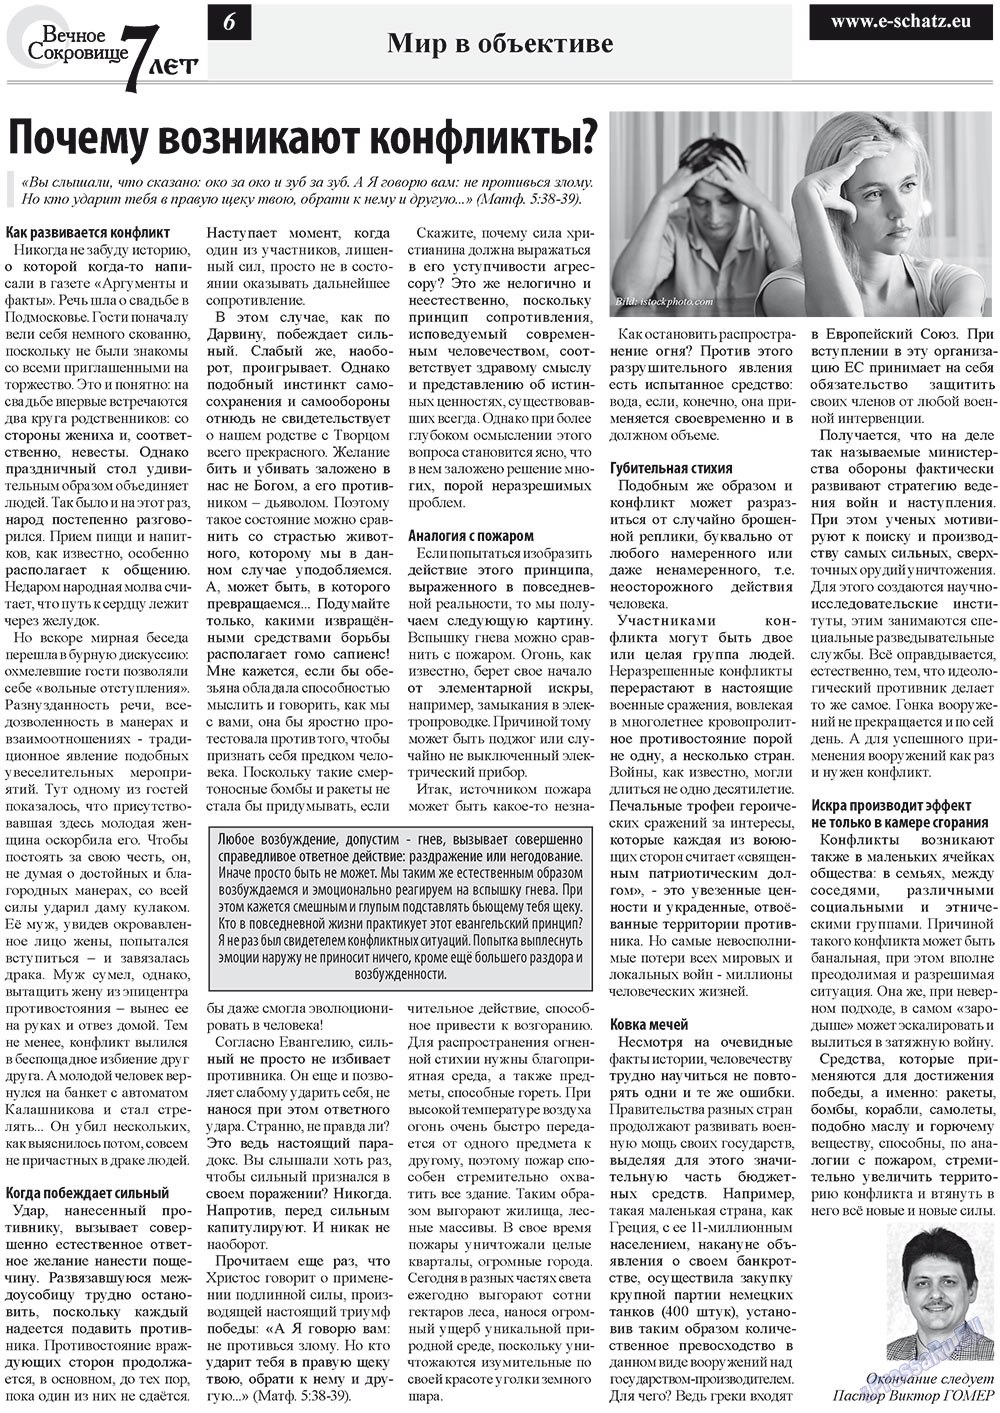 Вечное сокровище (газета). 2012 год, номер 5, стр. 6